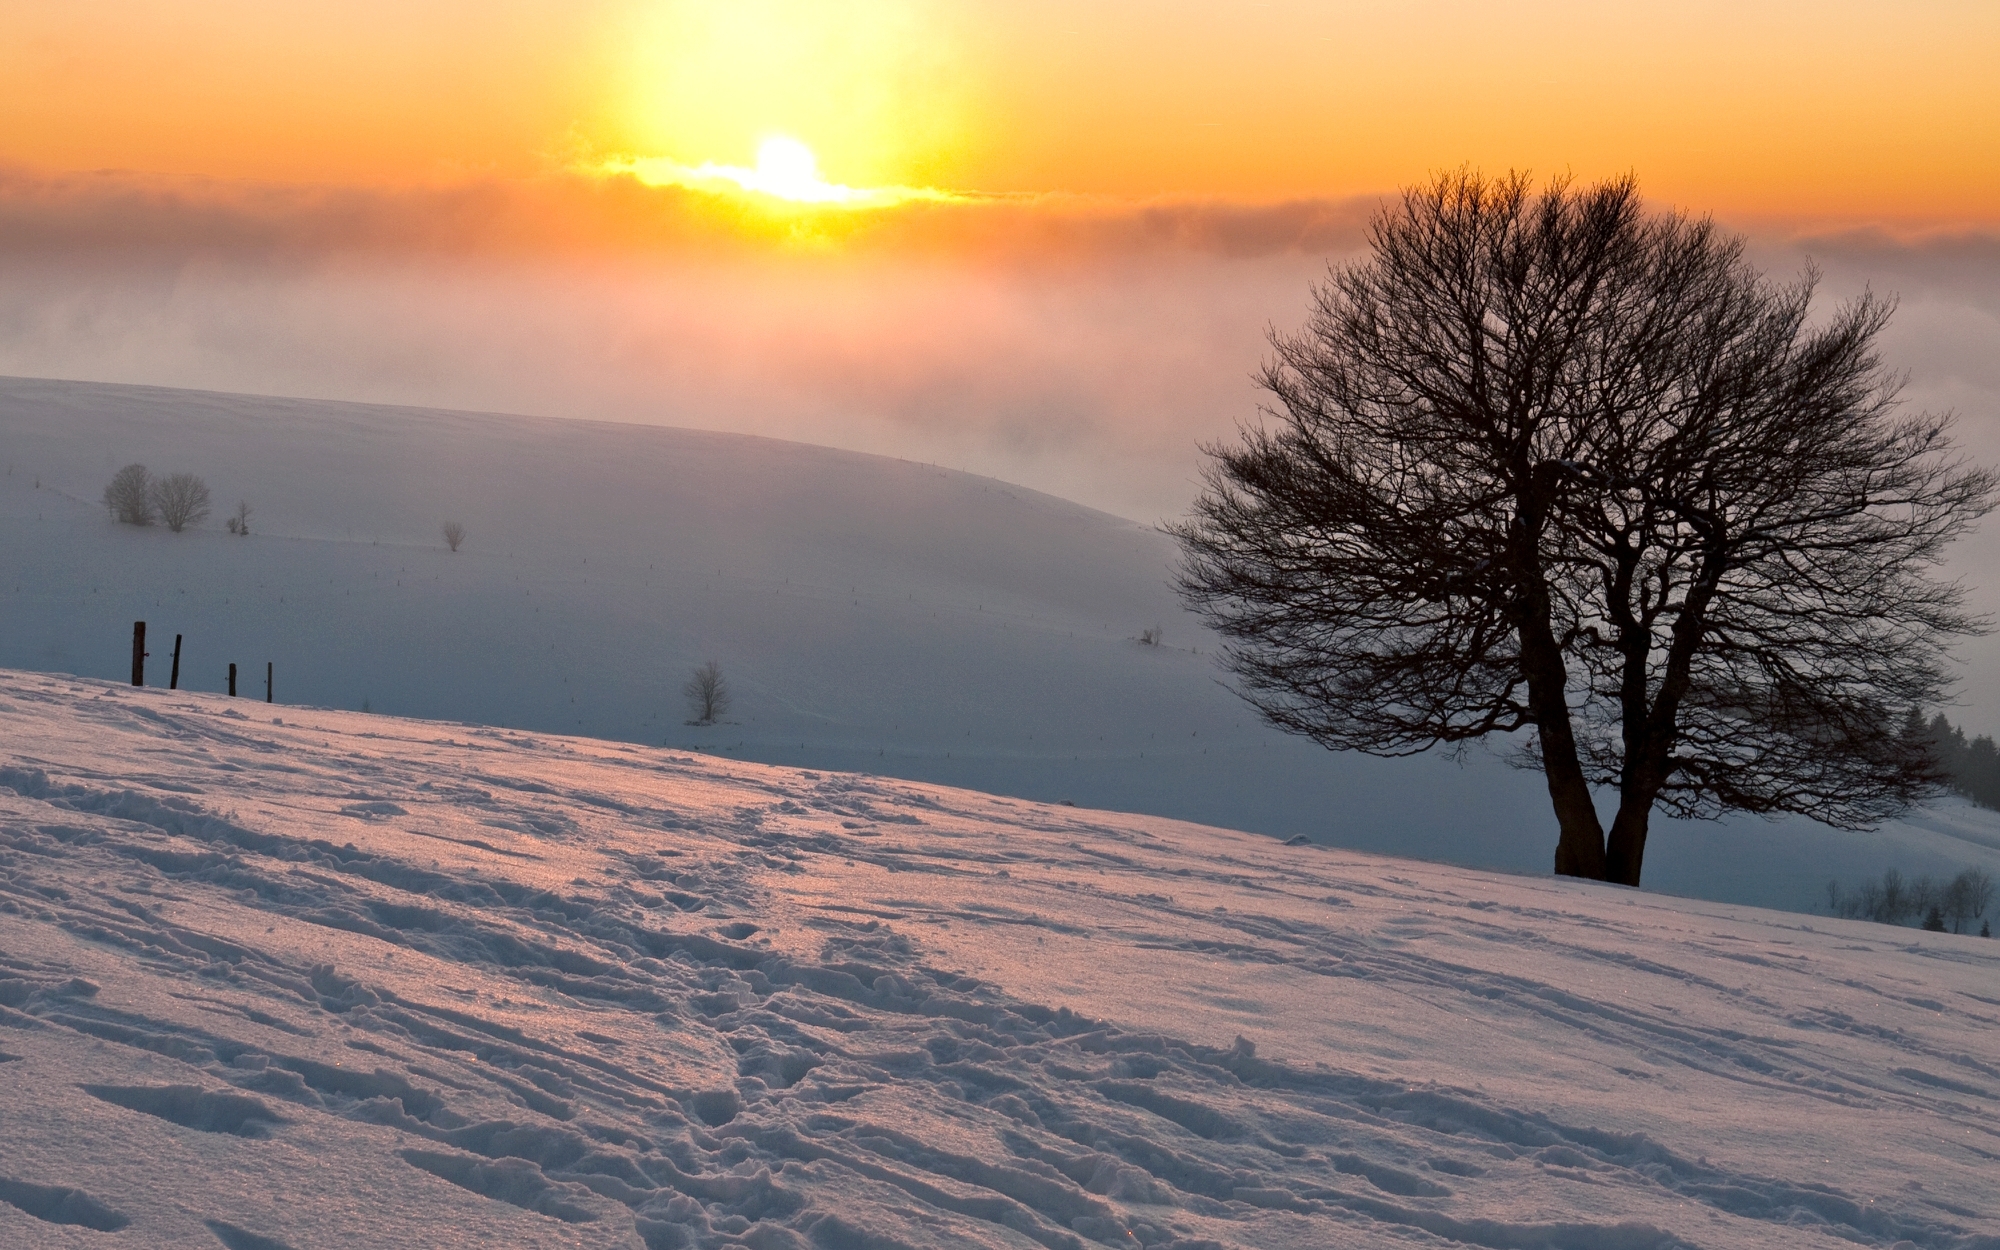 Скачать обои бесплатно Зима, Закат, Снег, Дерево, Земля/природа картинка на рабочий стол ПК